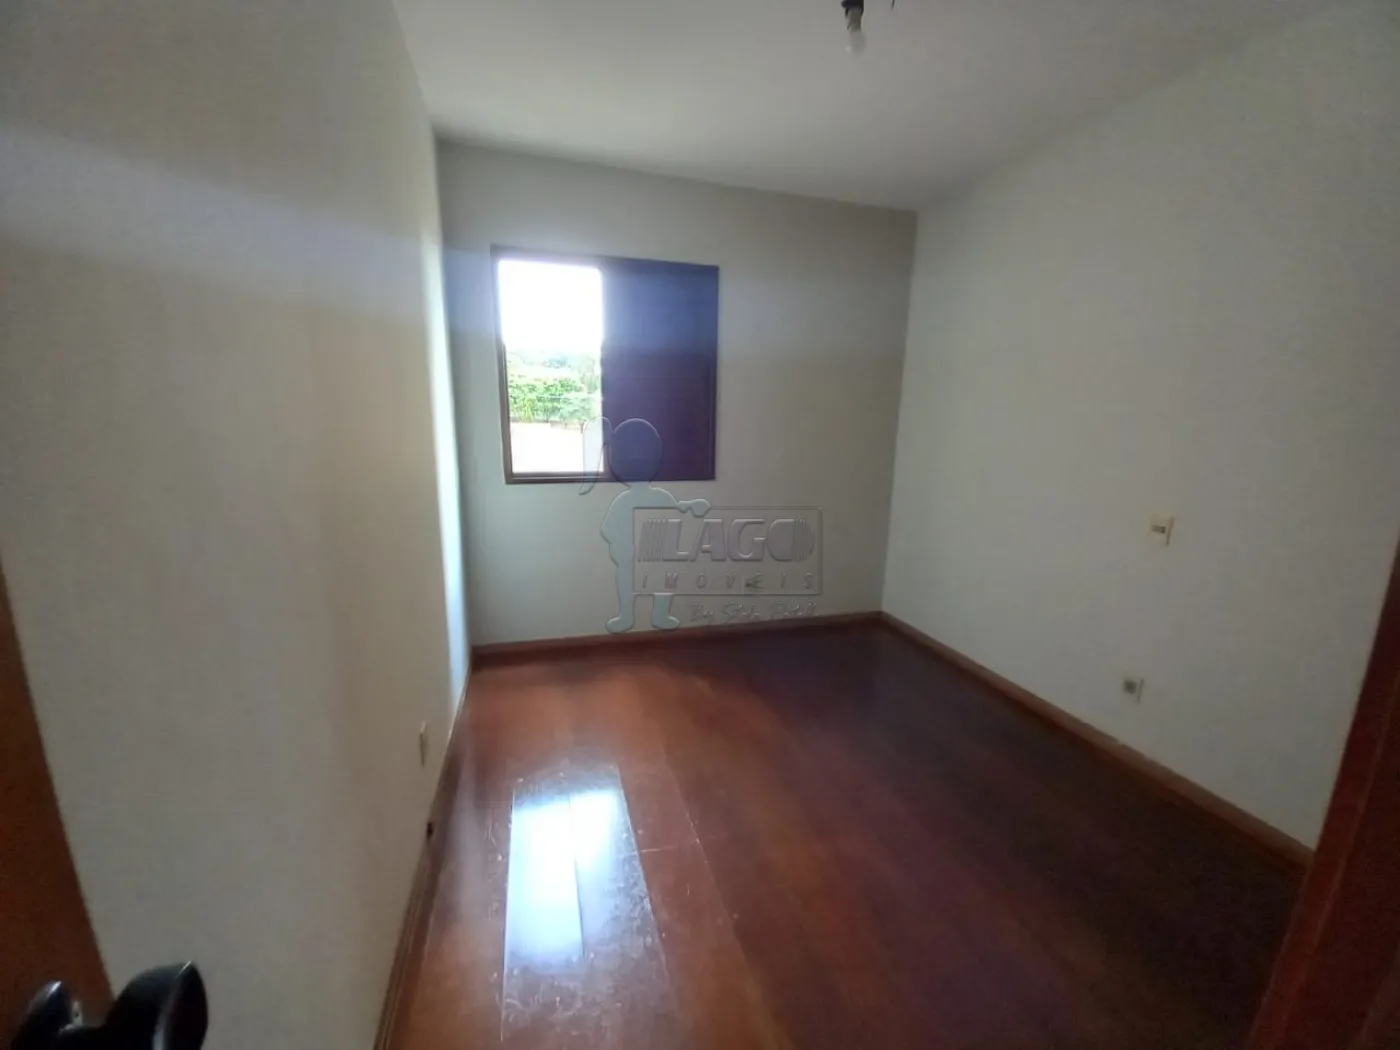 Alugar Apartamentos / Padrão em Ribeirão Preto R$ 1.600,00 - Foto 12